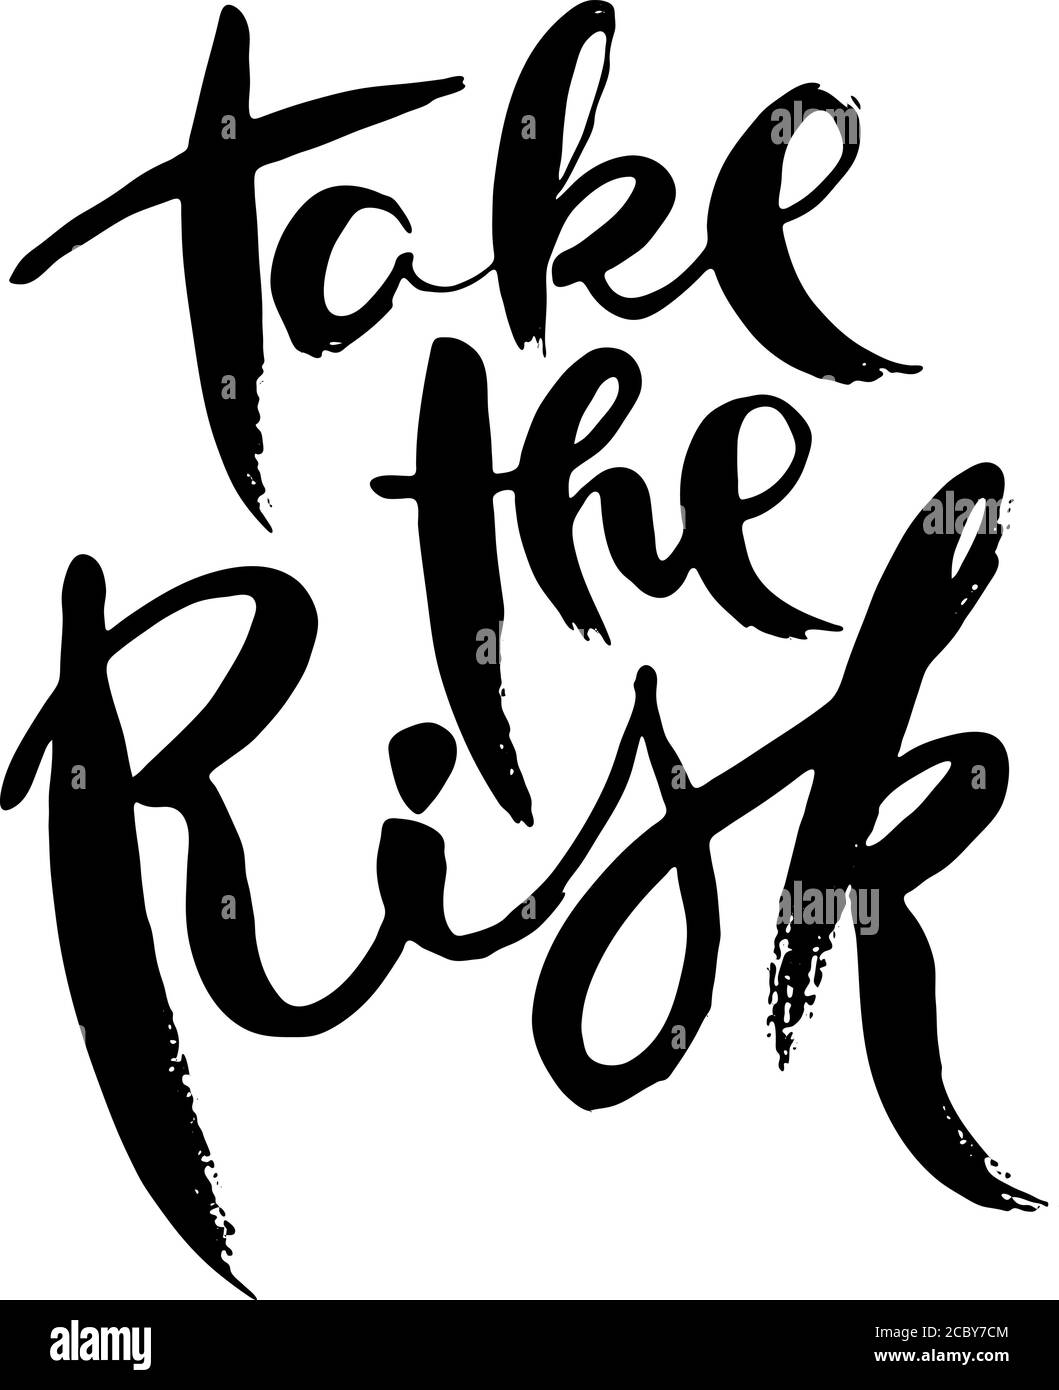 Gehen Sie Das Risiko Ein. Hand drwan Grunge Schriftzug isoliert Kunstwerk. Stempel für T-Shirt Grafiken, Print, Poster, Banner, Flyer, Tags, Postkarte. Vektorbild Stock Vektor